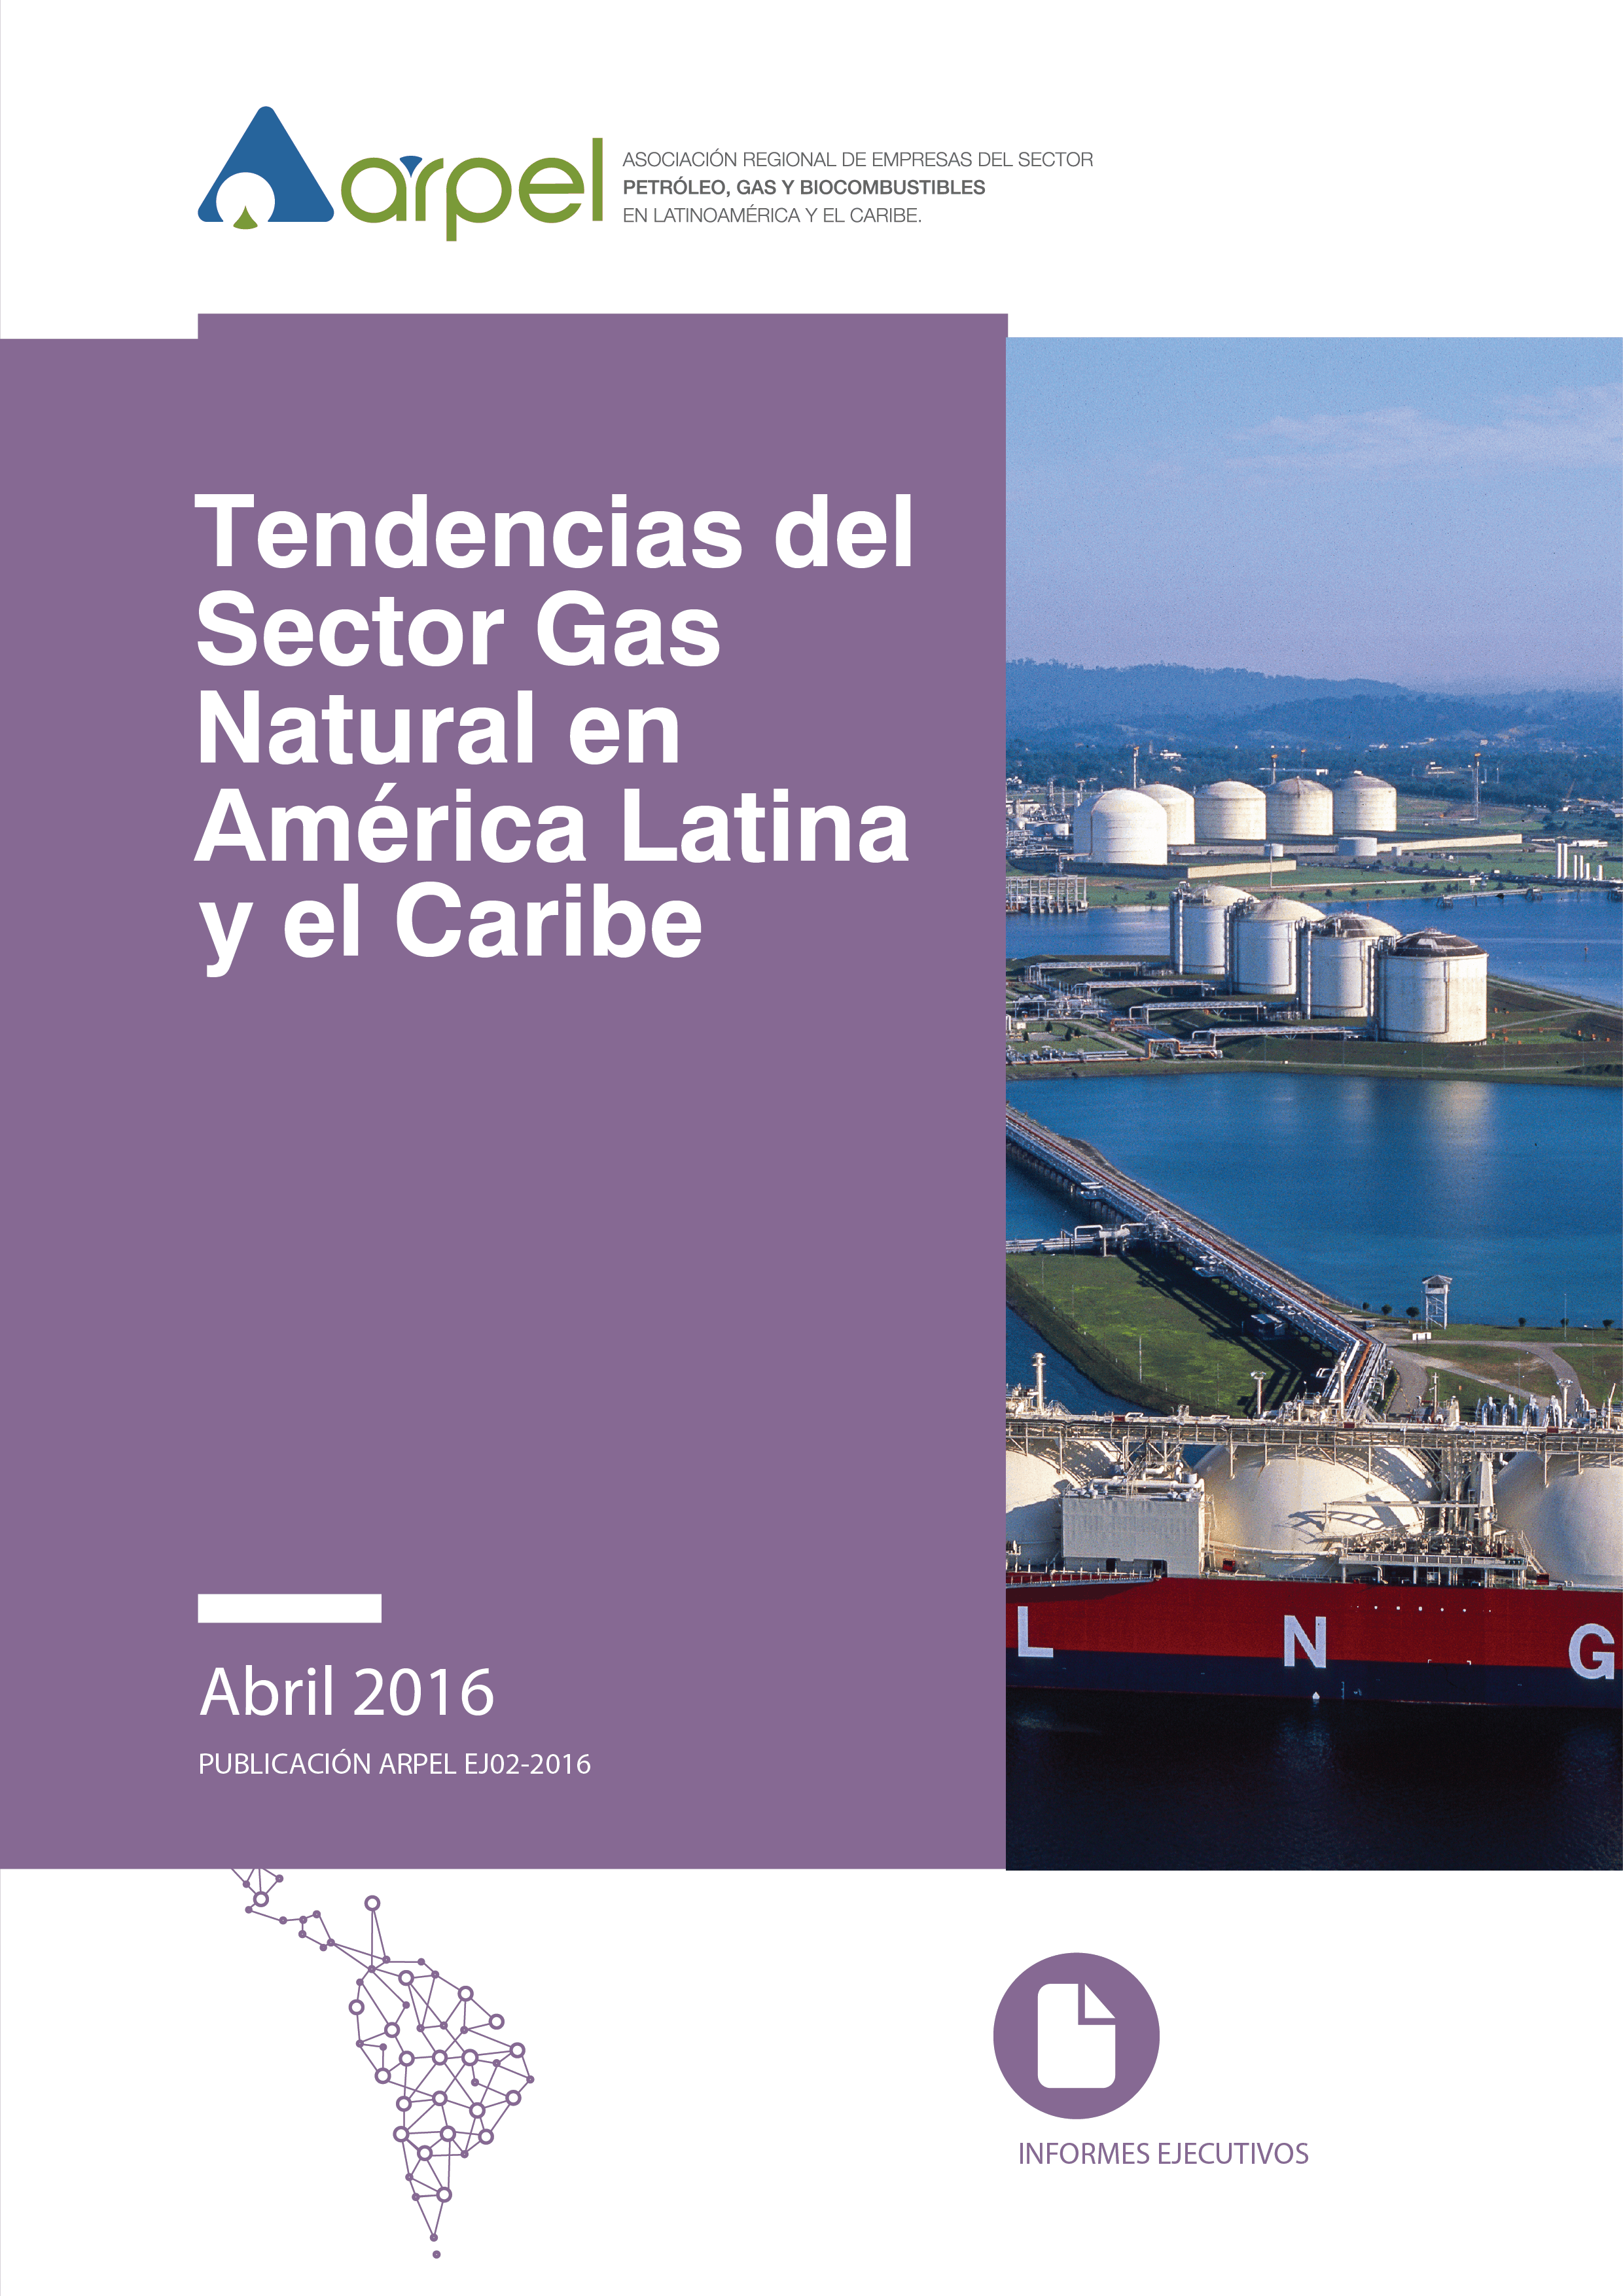 Tendencias del Sector Gas Natural en América Latina y el Caribe